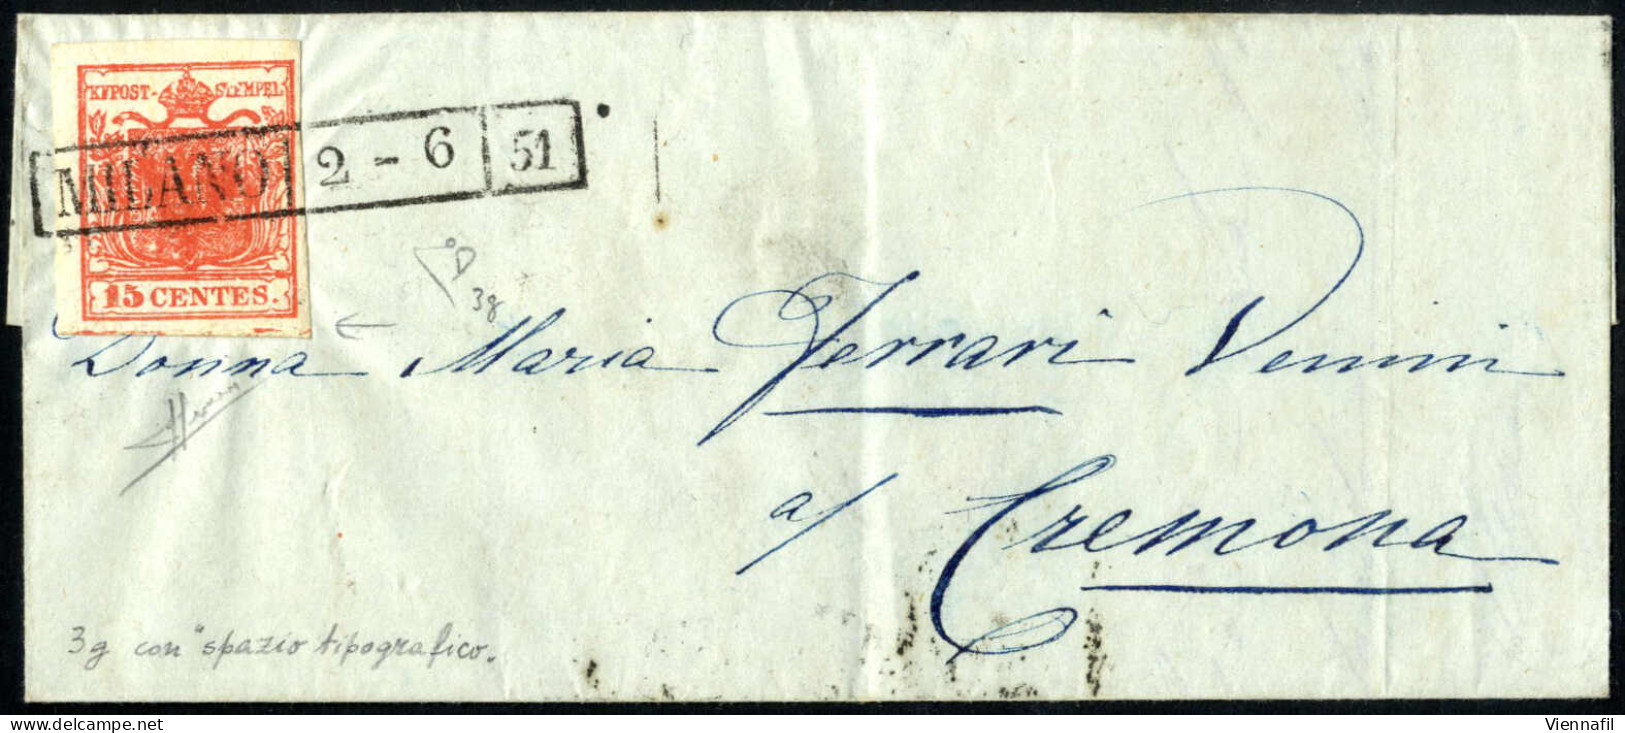 Cover 1851, Lettera Da Milano Del "2-6 51" Per Cremona, Affrancata Con 15 Cent. Rosso Tipo I Carta A Mano, Con Lieve Spa - Lombardo-Vénétie